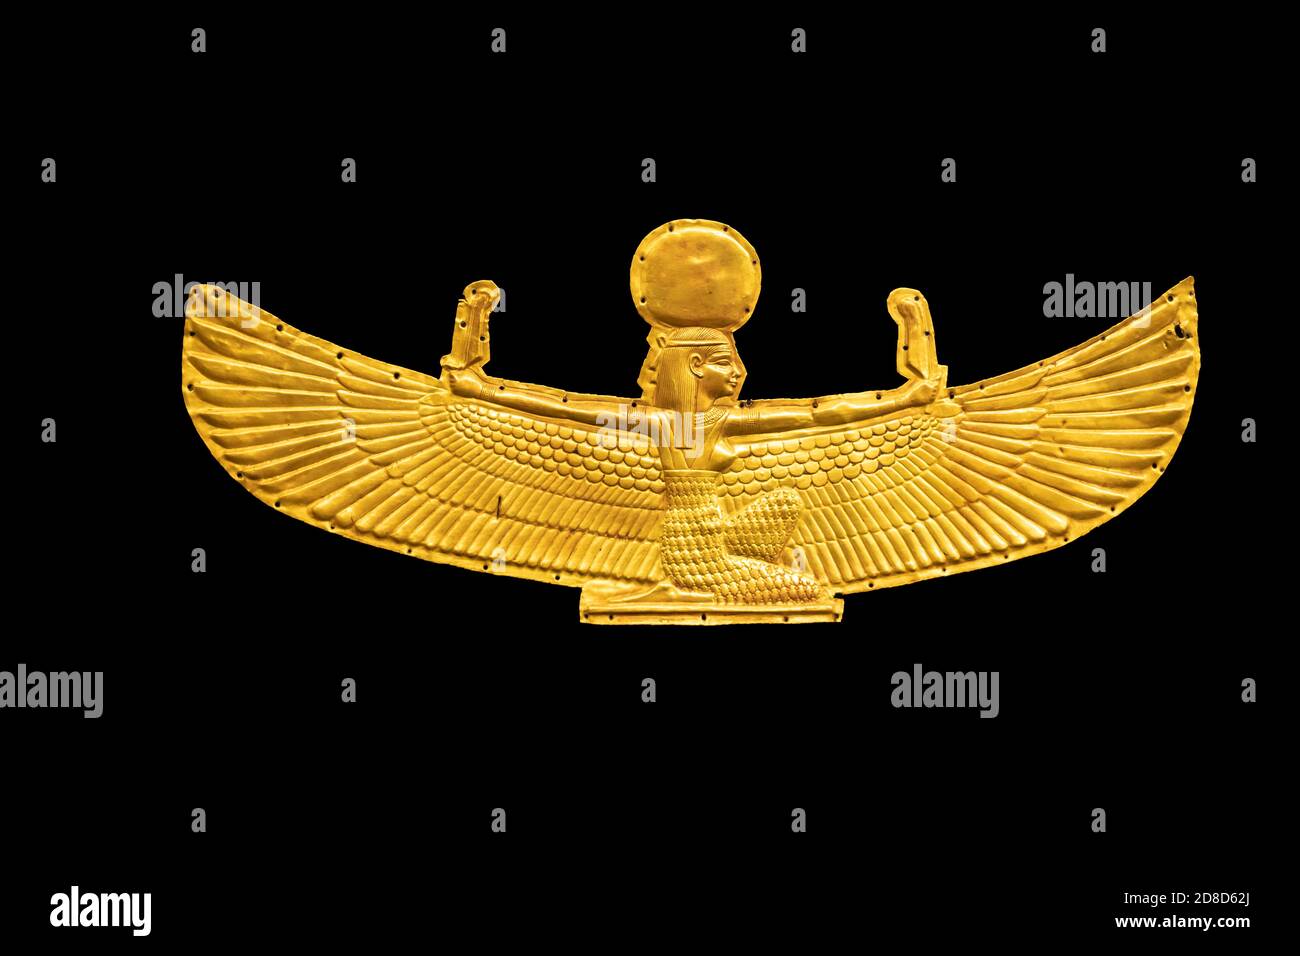 La déesse dorée Isis avec des ailes étirées, isolée sur fond blanc Banque D'Images